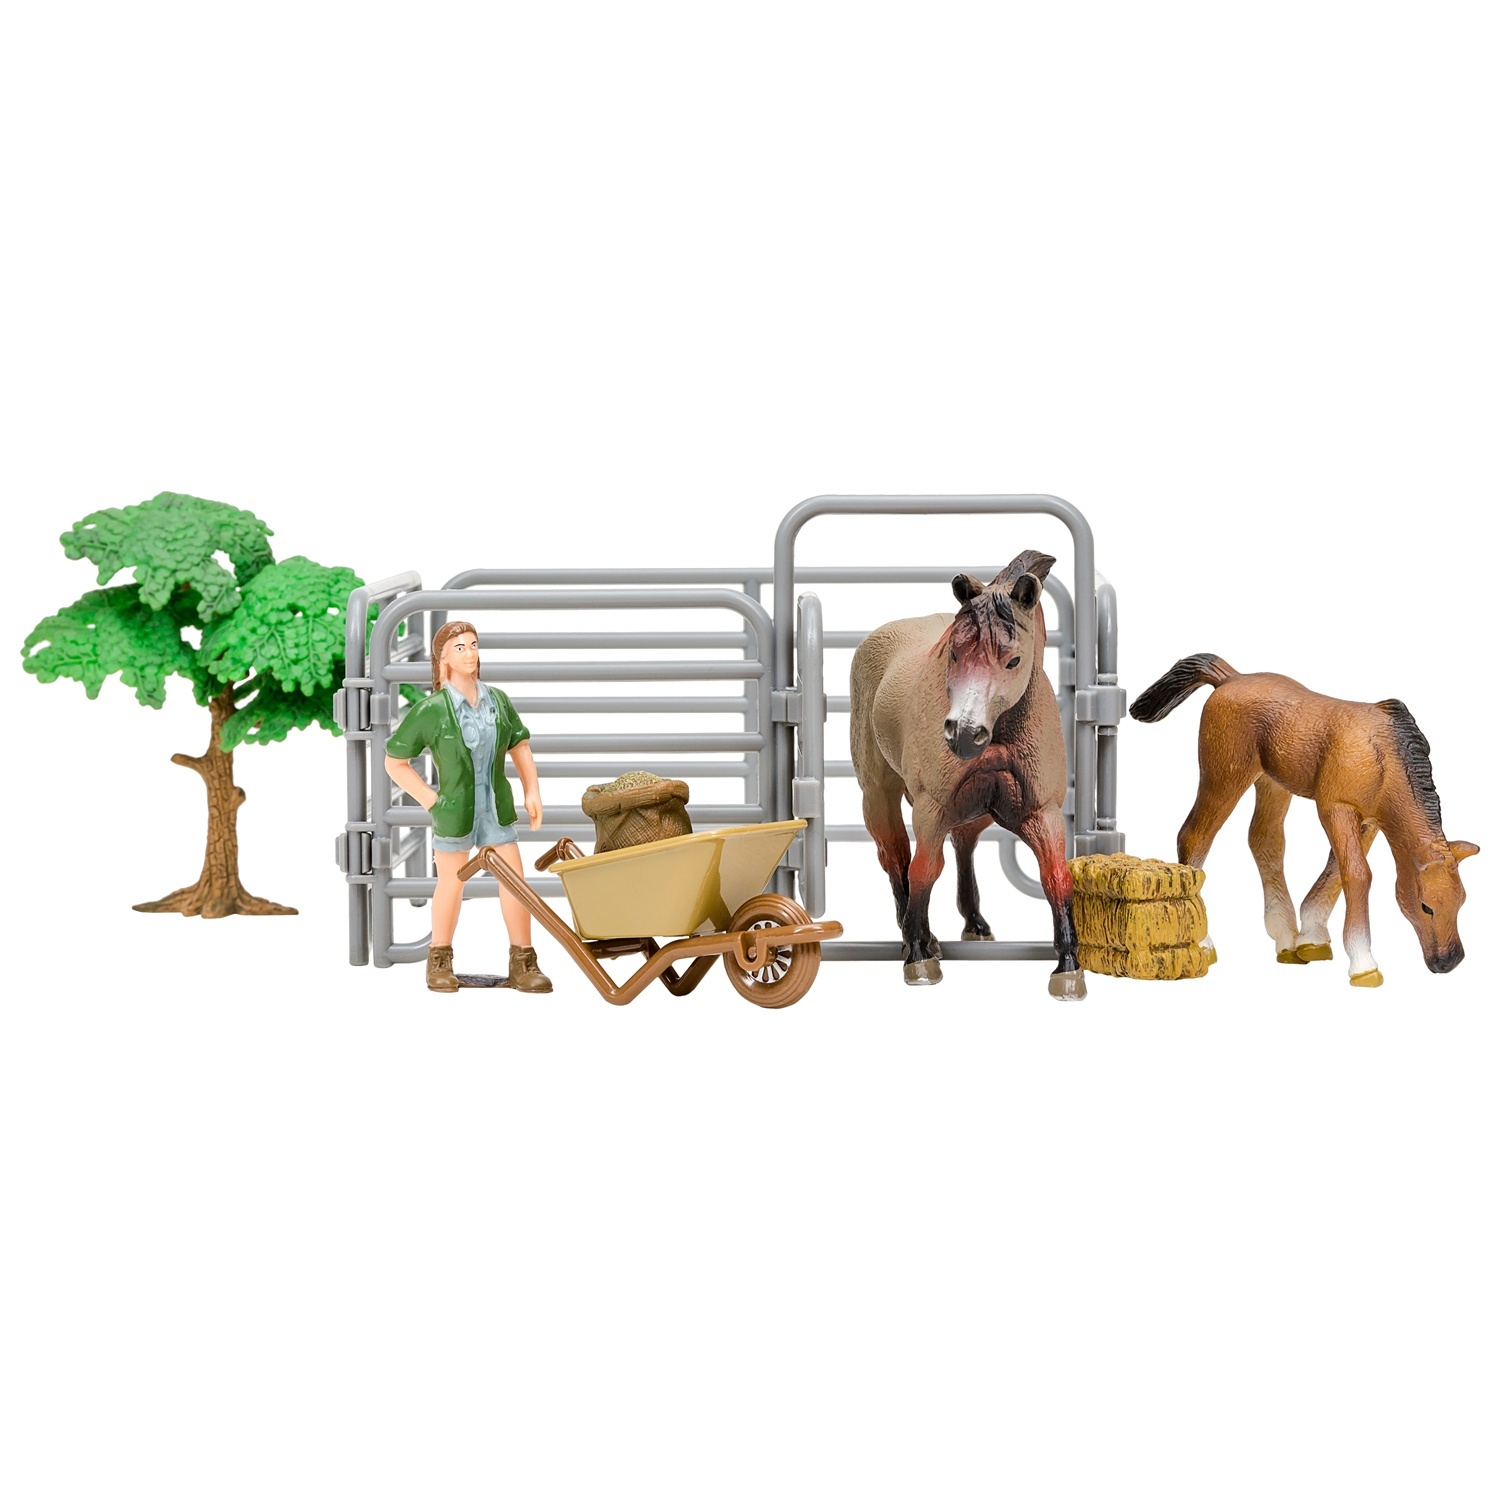 фото Фигурка masai mara 8 предметов, (американская лошадь и жеребенок, фермер, дерево, загон)